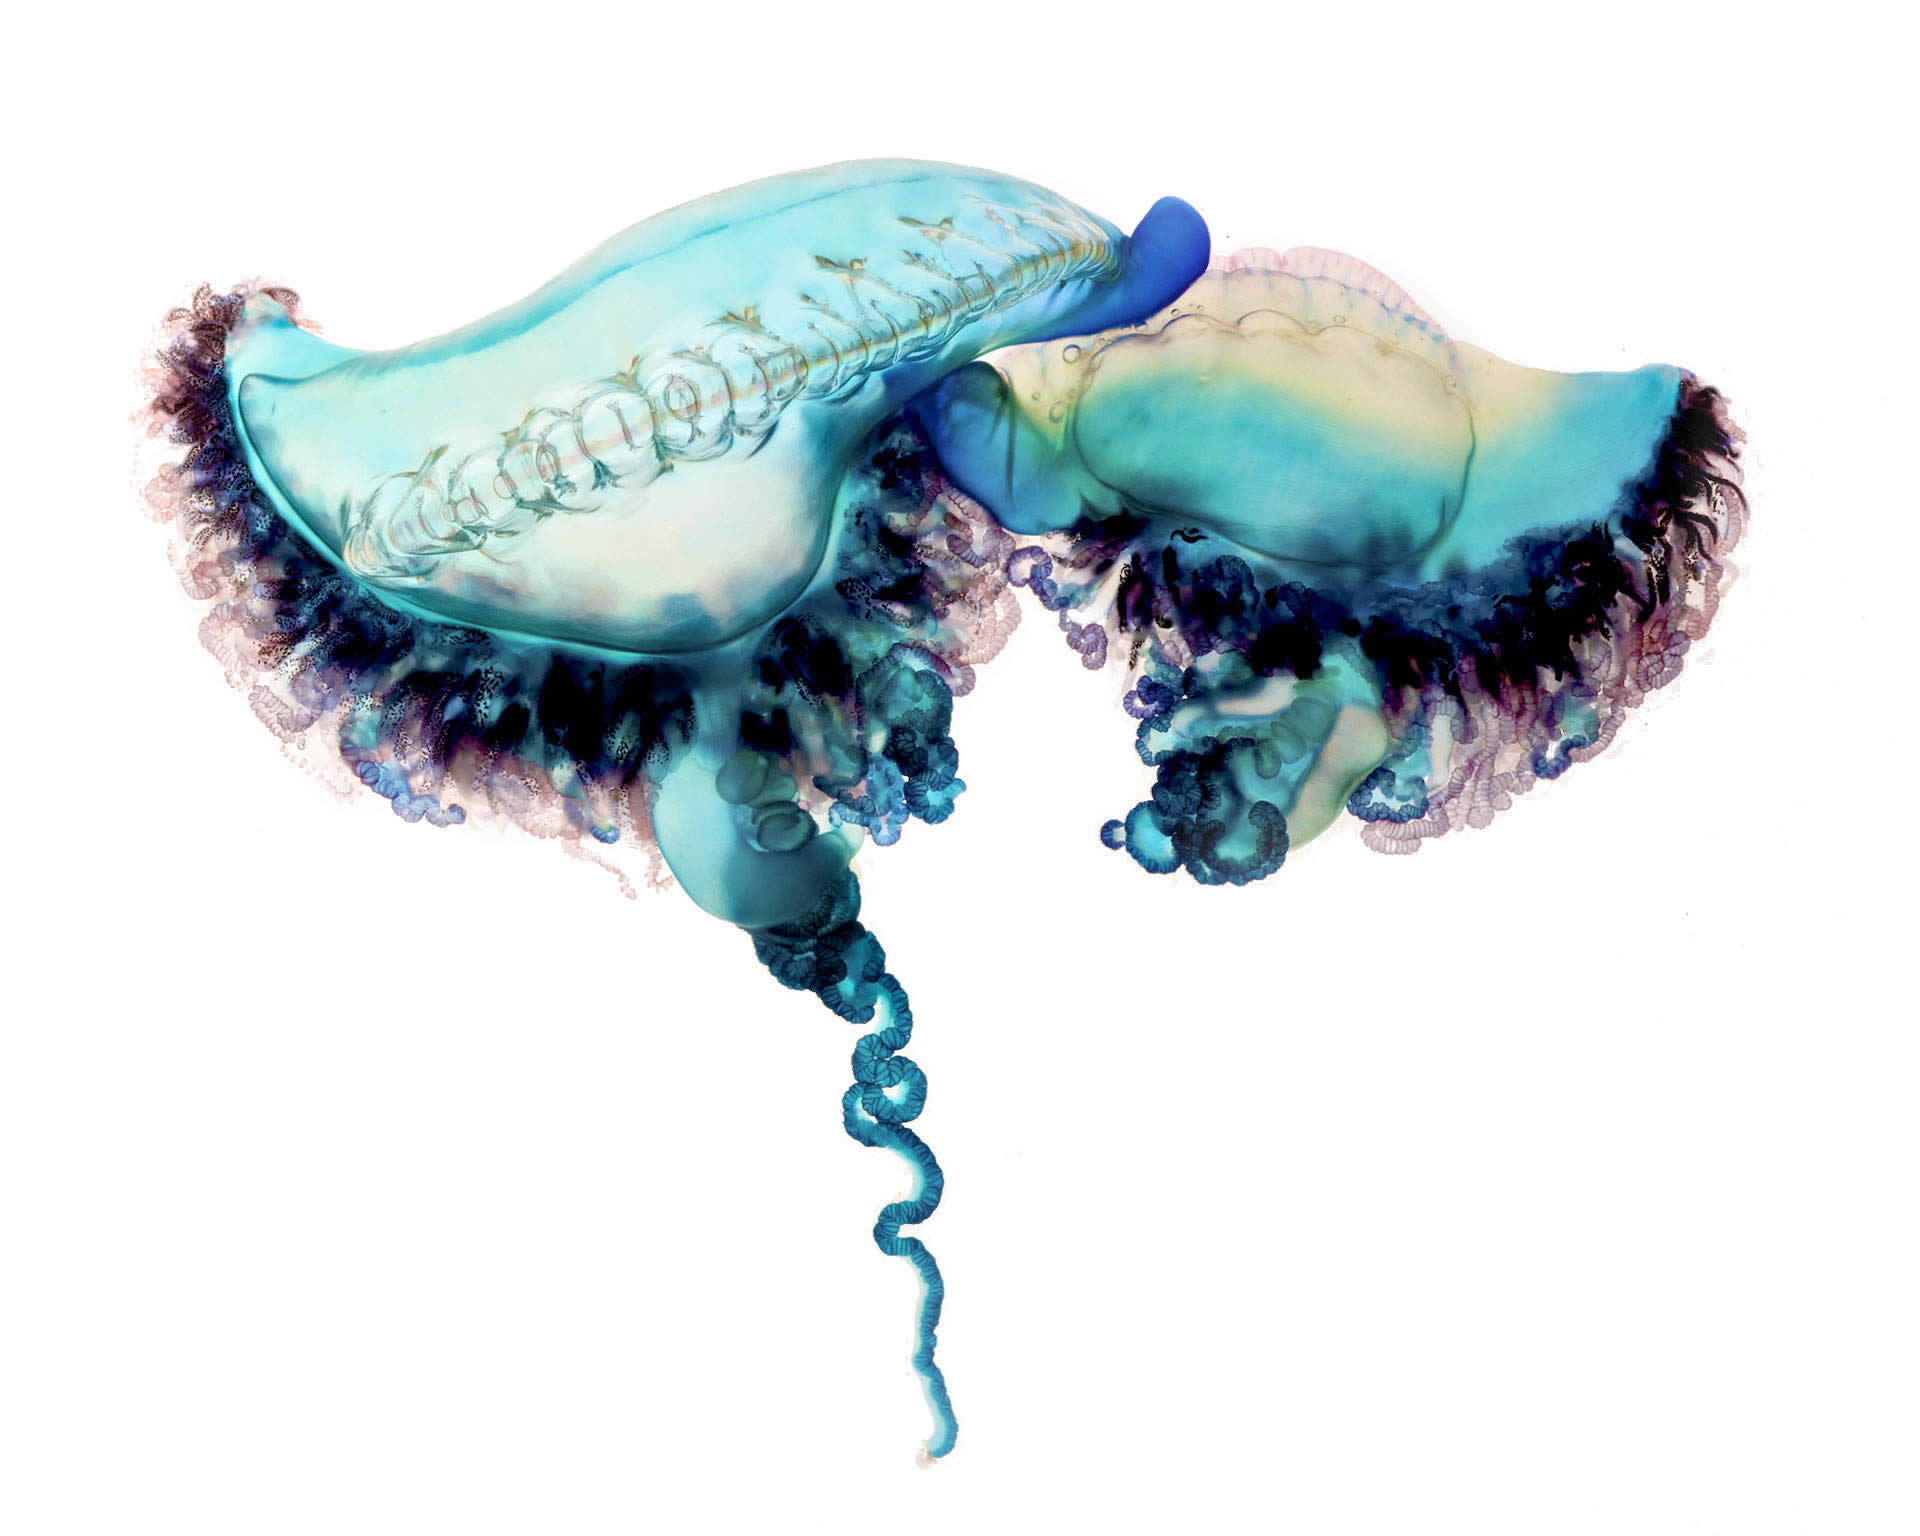 stingray type jellyfish by Aaron Ansarov